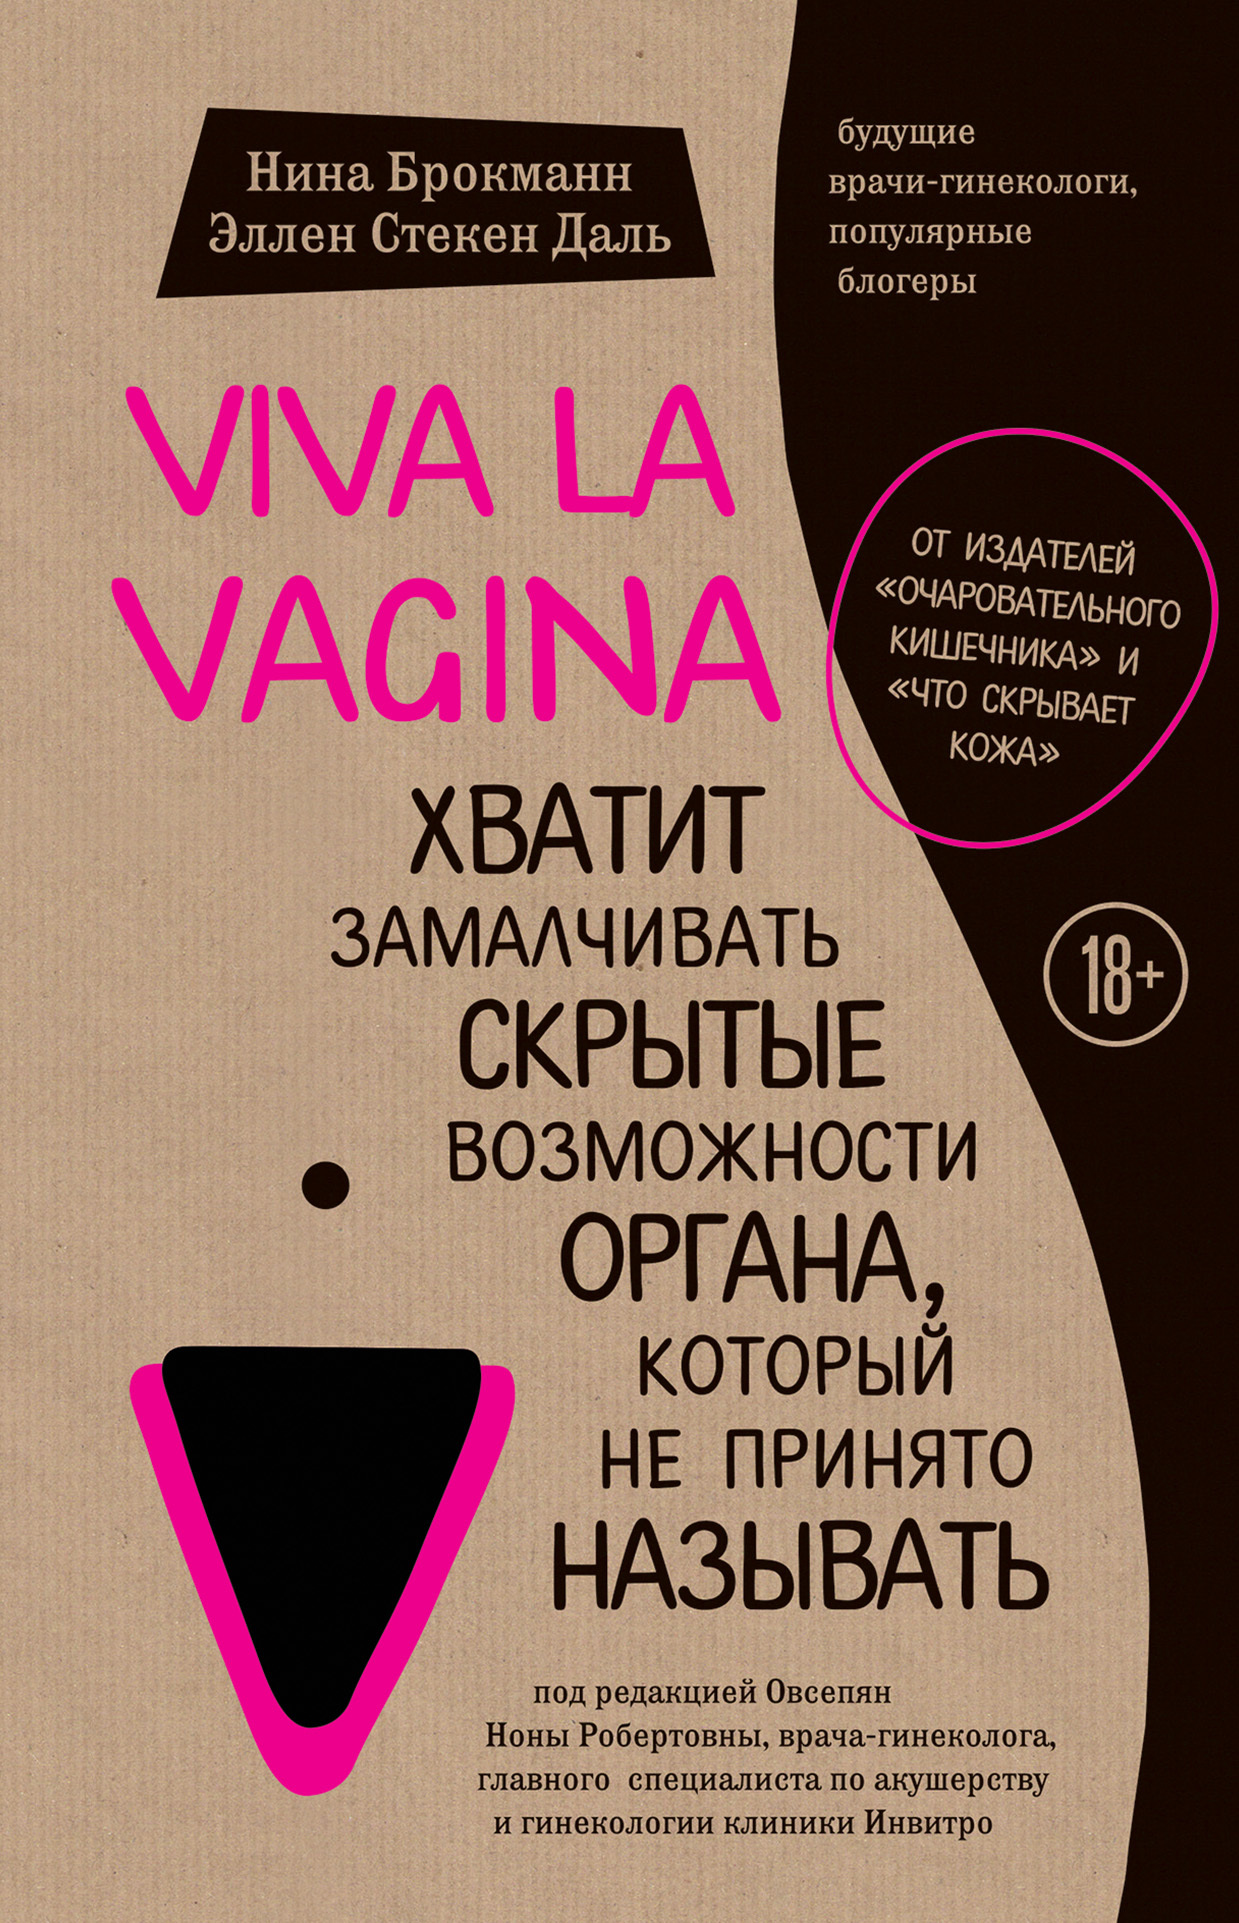 Брокманн Нина - Viva la vagina. Хватит замалчивать скрытые возможности органа, который не принято называть скачать бесплатно